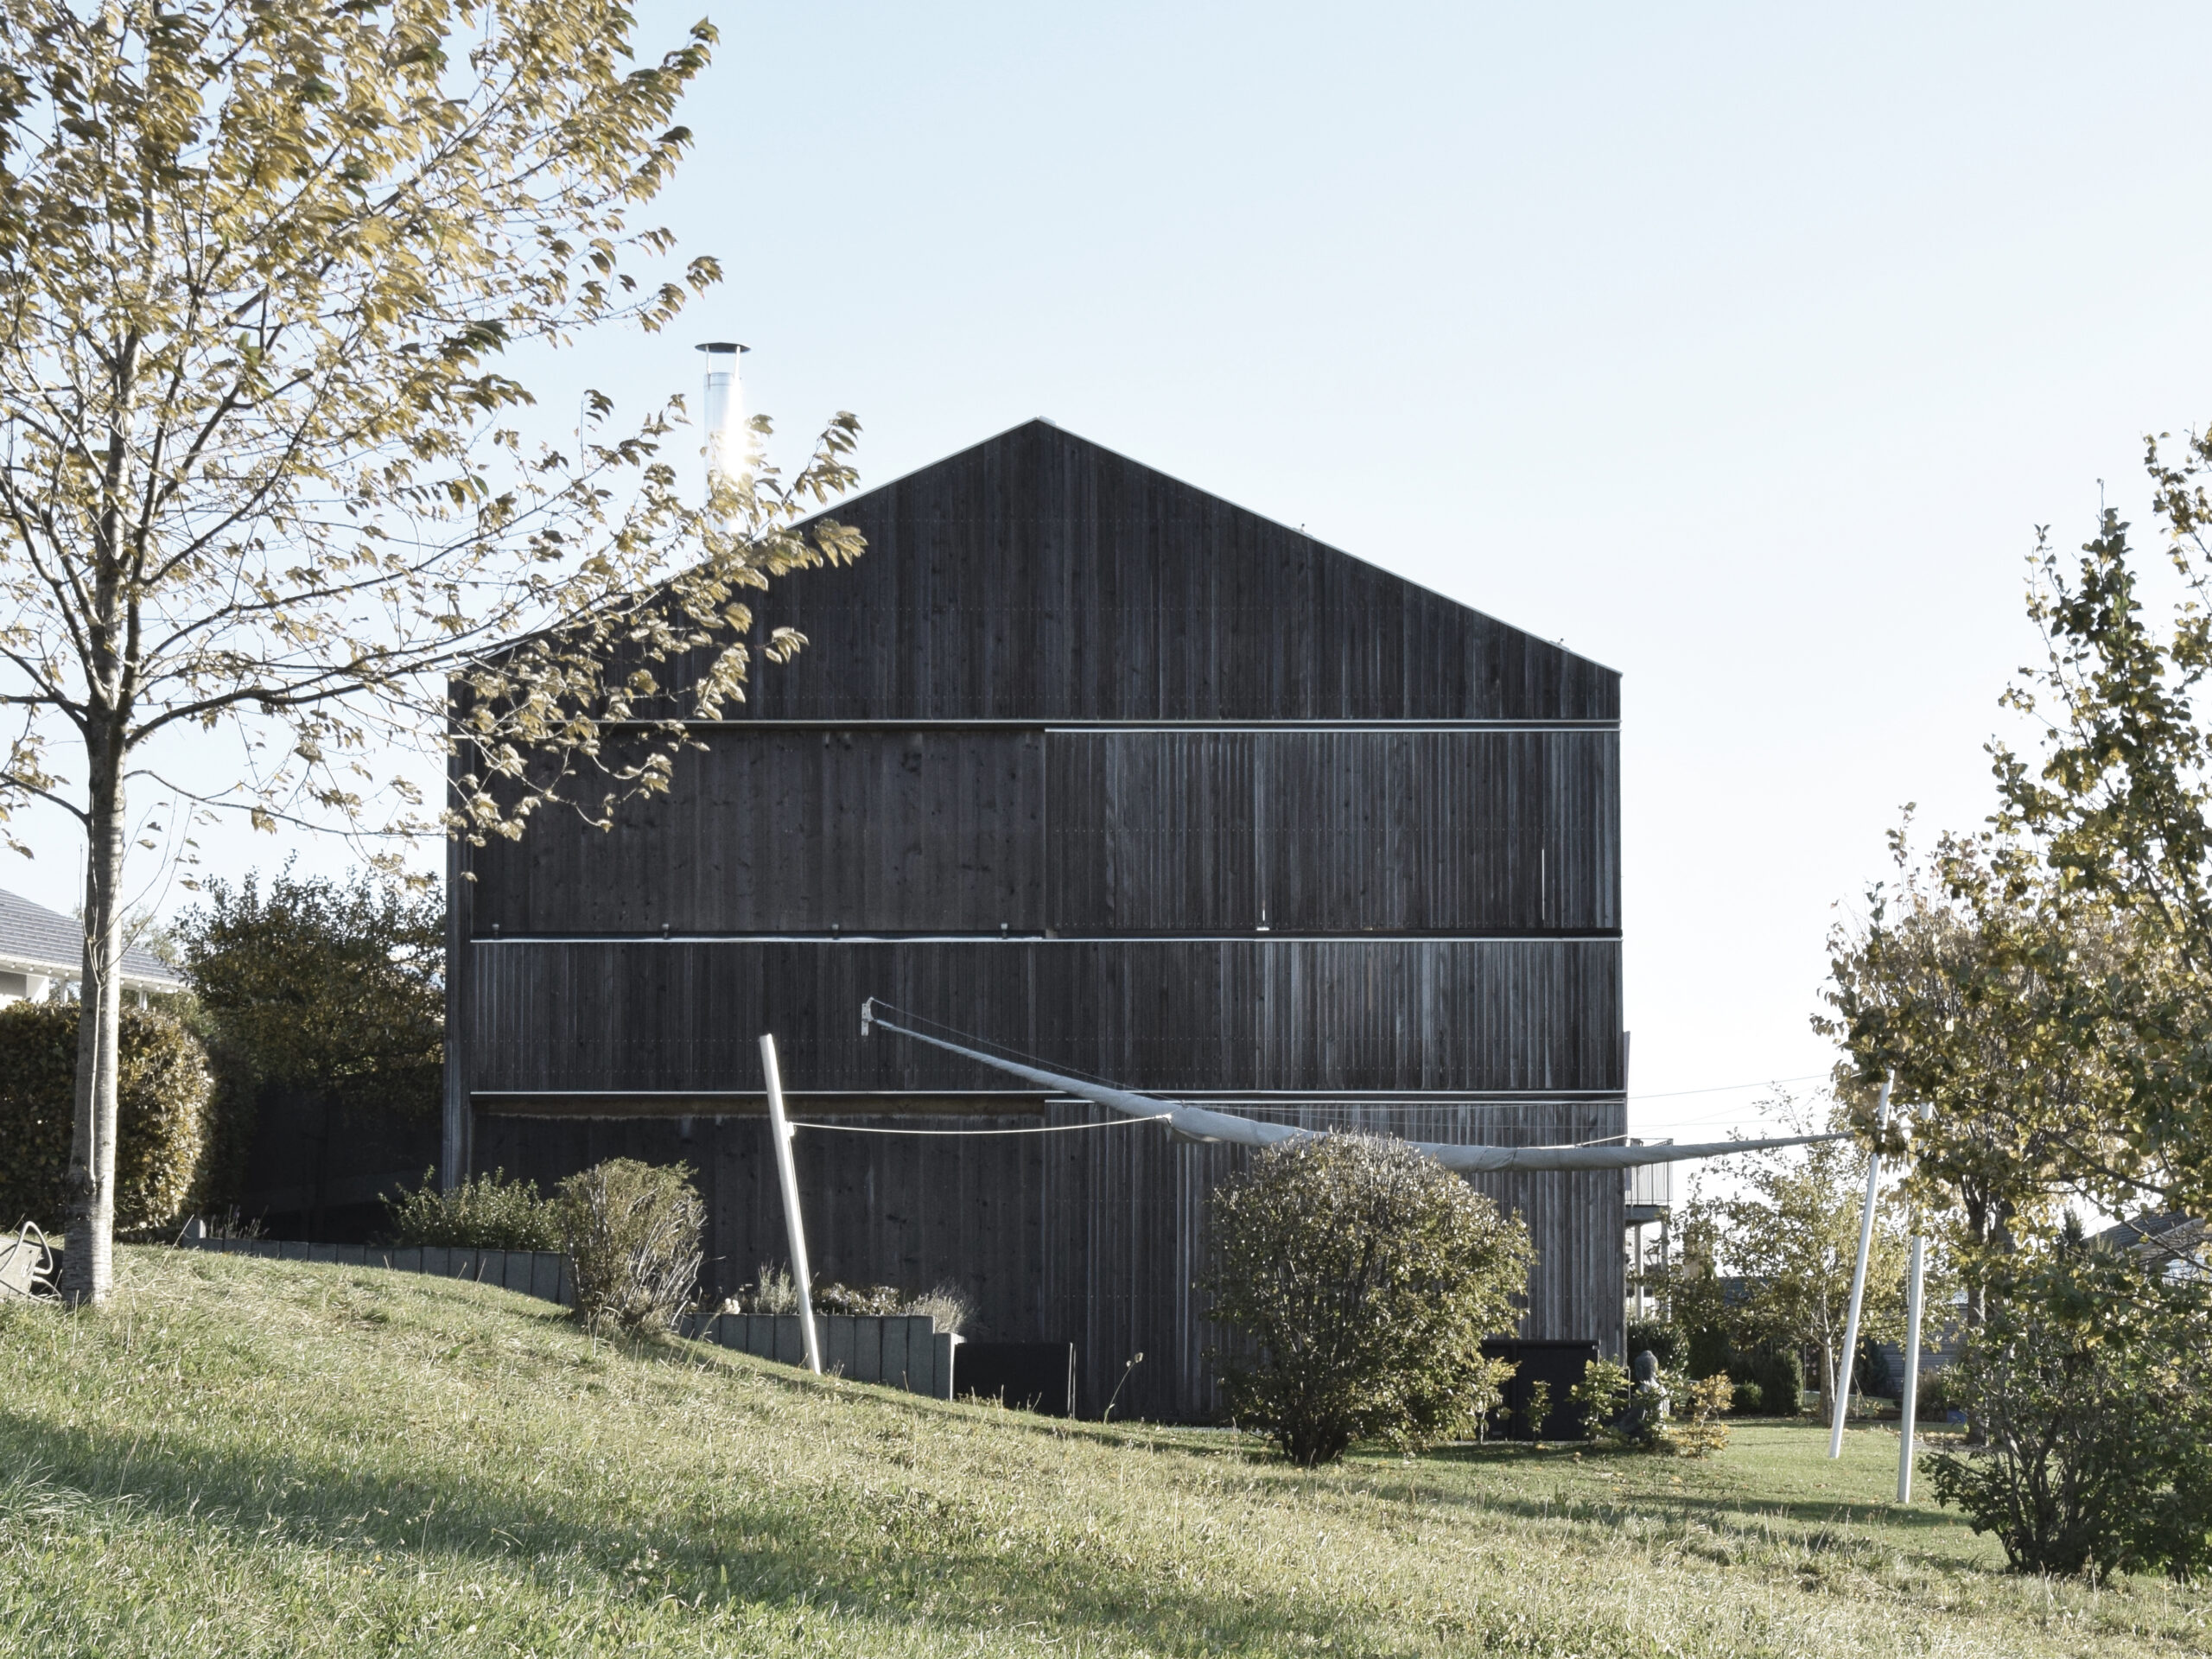 Michael-Becker-Architects-Architekten-Haus-s-01